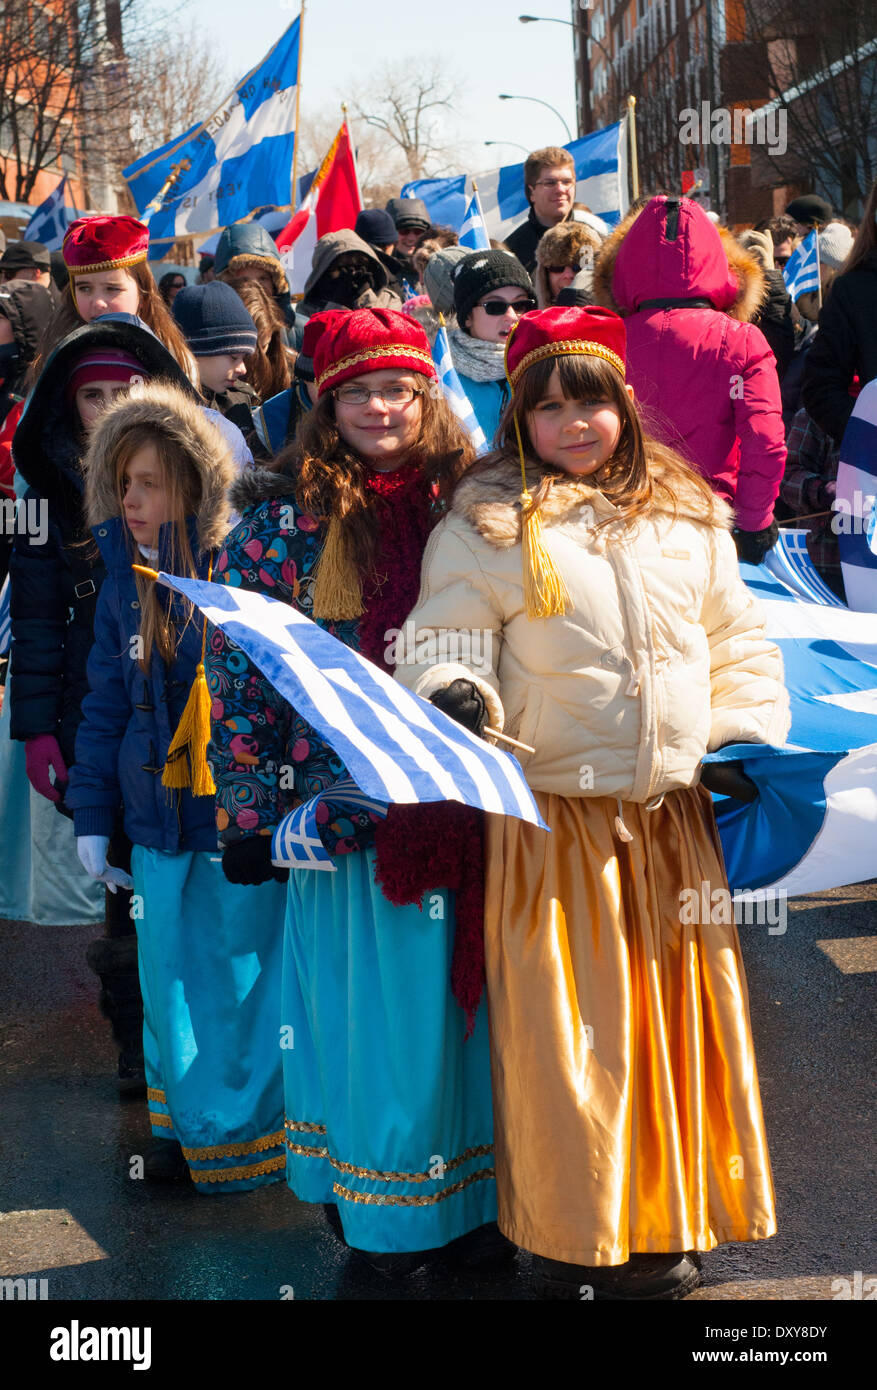 Défilé annuel à Montréal pour commémorer le jour de l'indépendance de la Grèce dans la région de Park Extension zone multiculturelle Banque D'Images